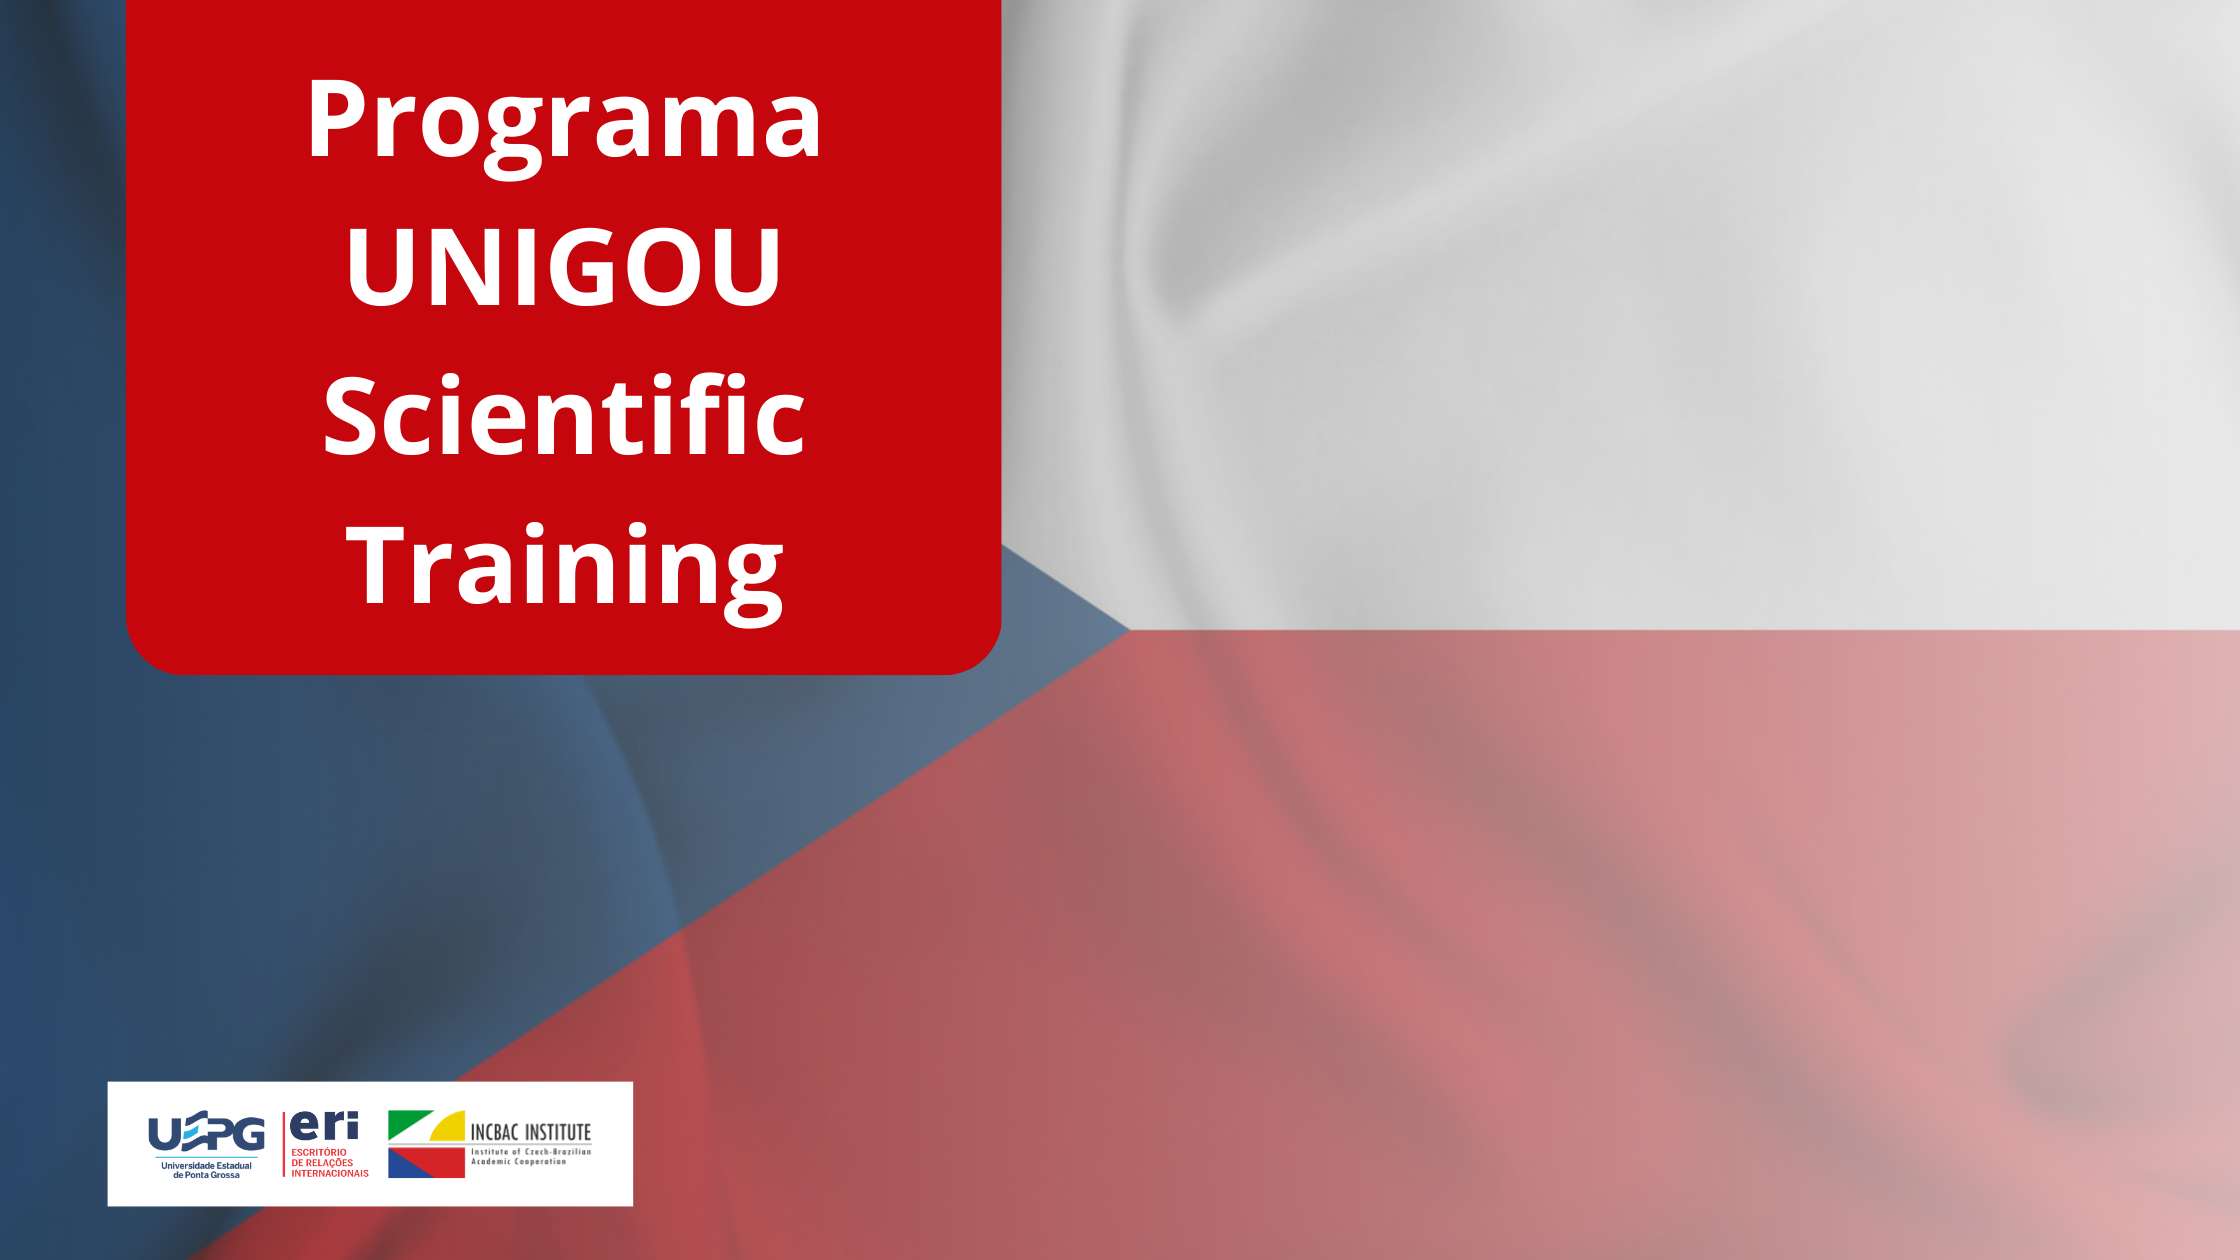 UNIGOU Scientific Training Program